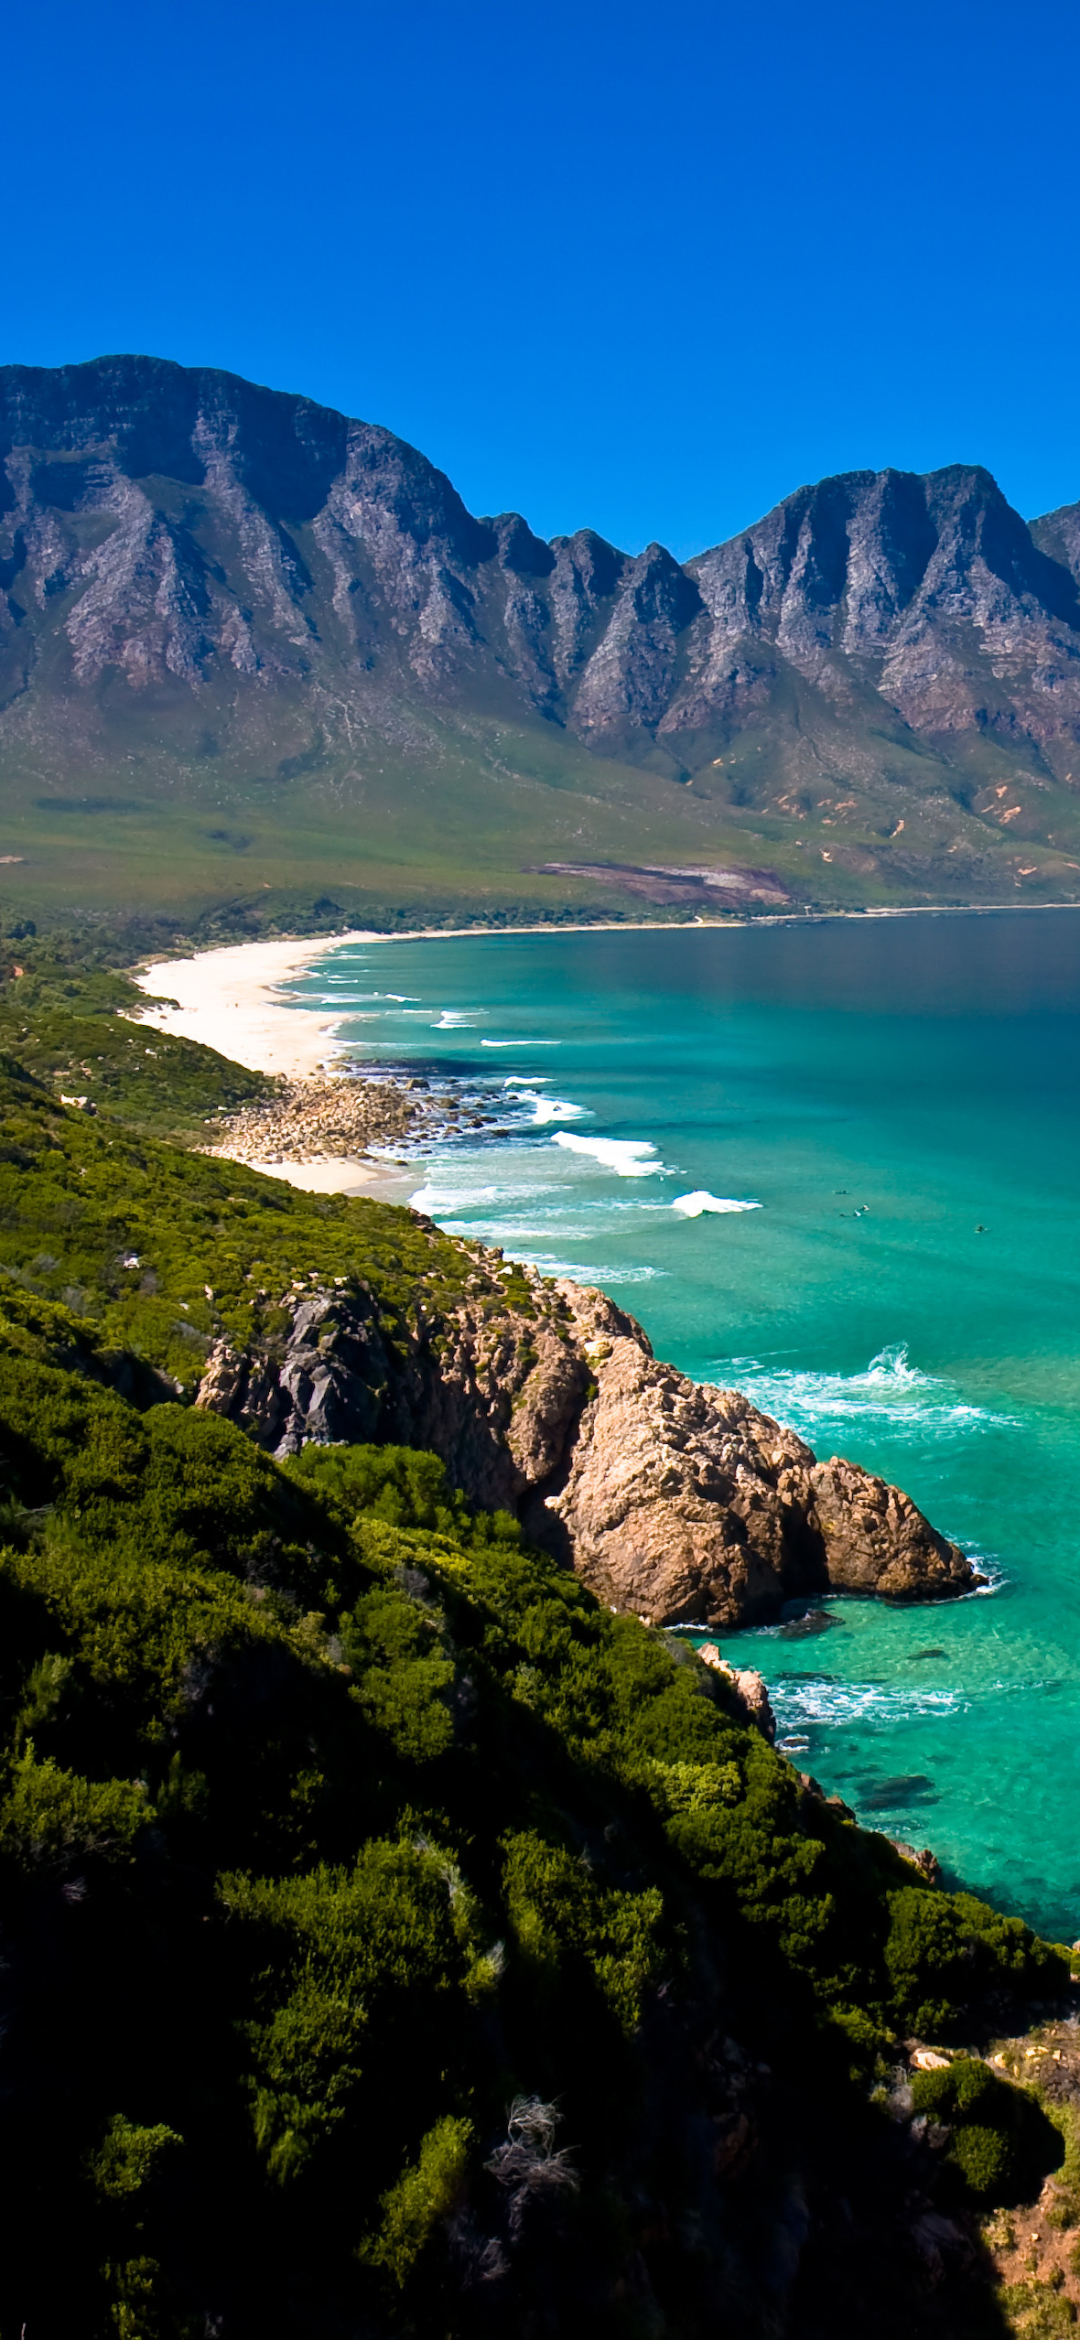 Descarga gratuita de fondo de pantalla para móvil de Naturaleza, Costa, Océano, Sudáfrica, Tierra/naturaleza.